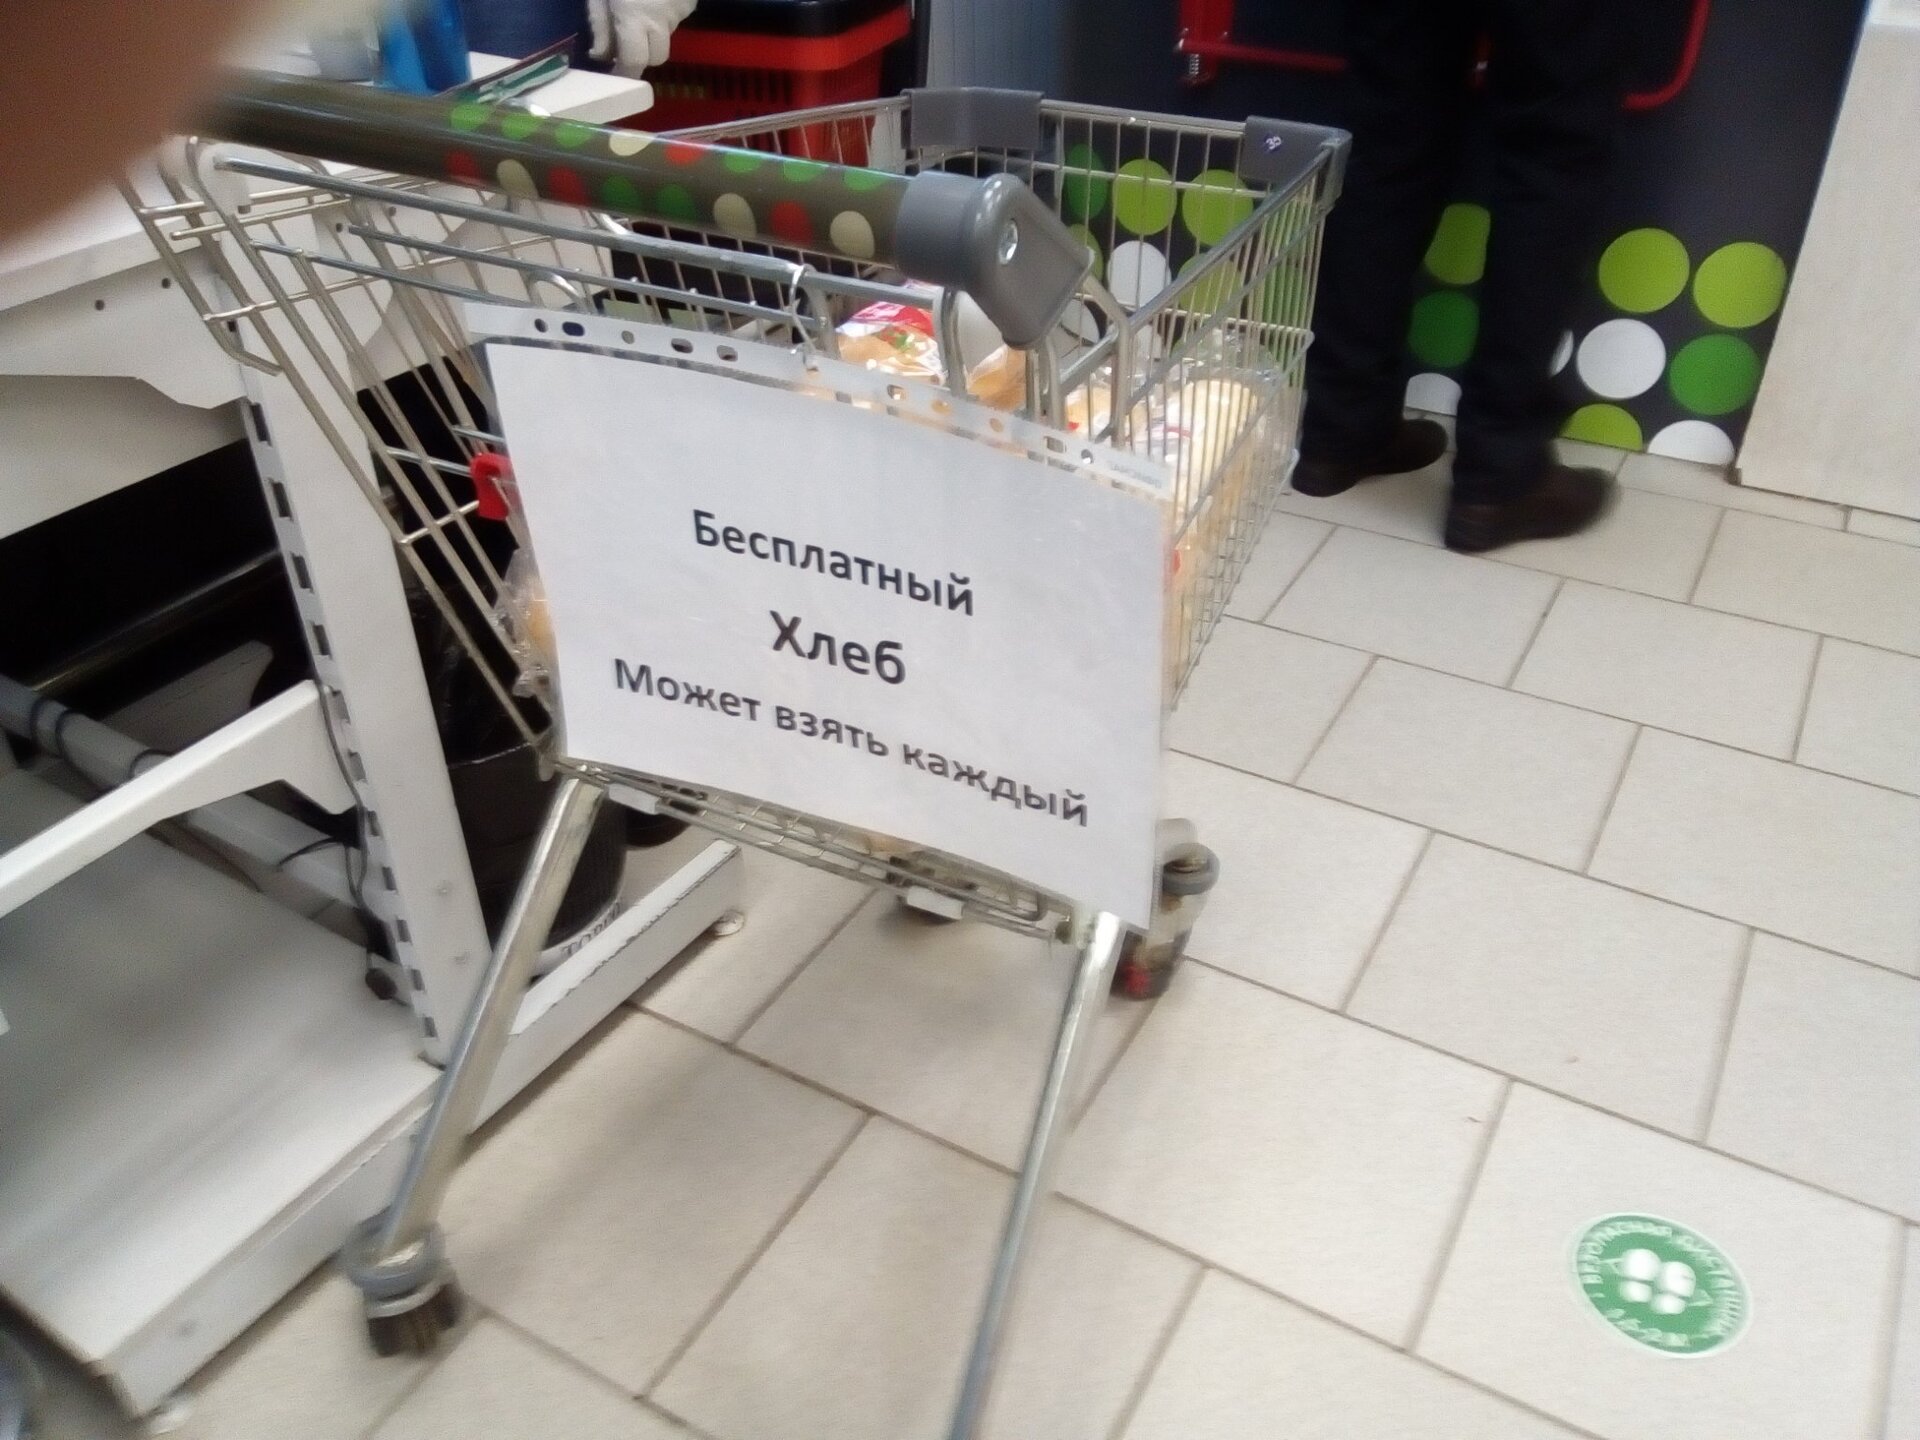 Москвичи обнаружили бесплатный хлеб в одном из магазинов